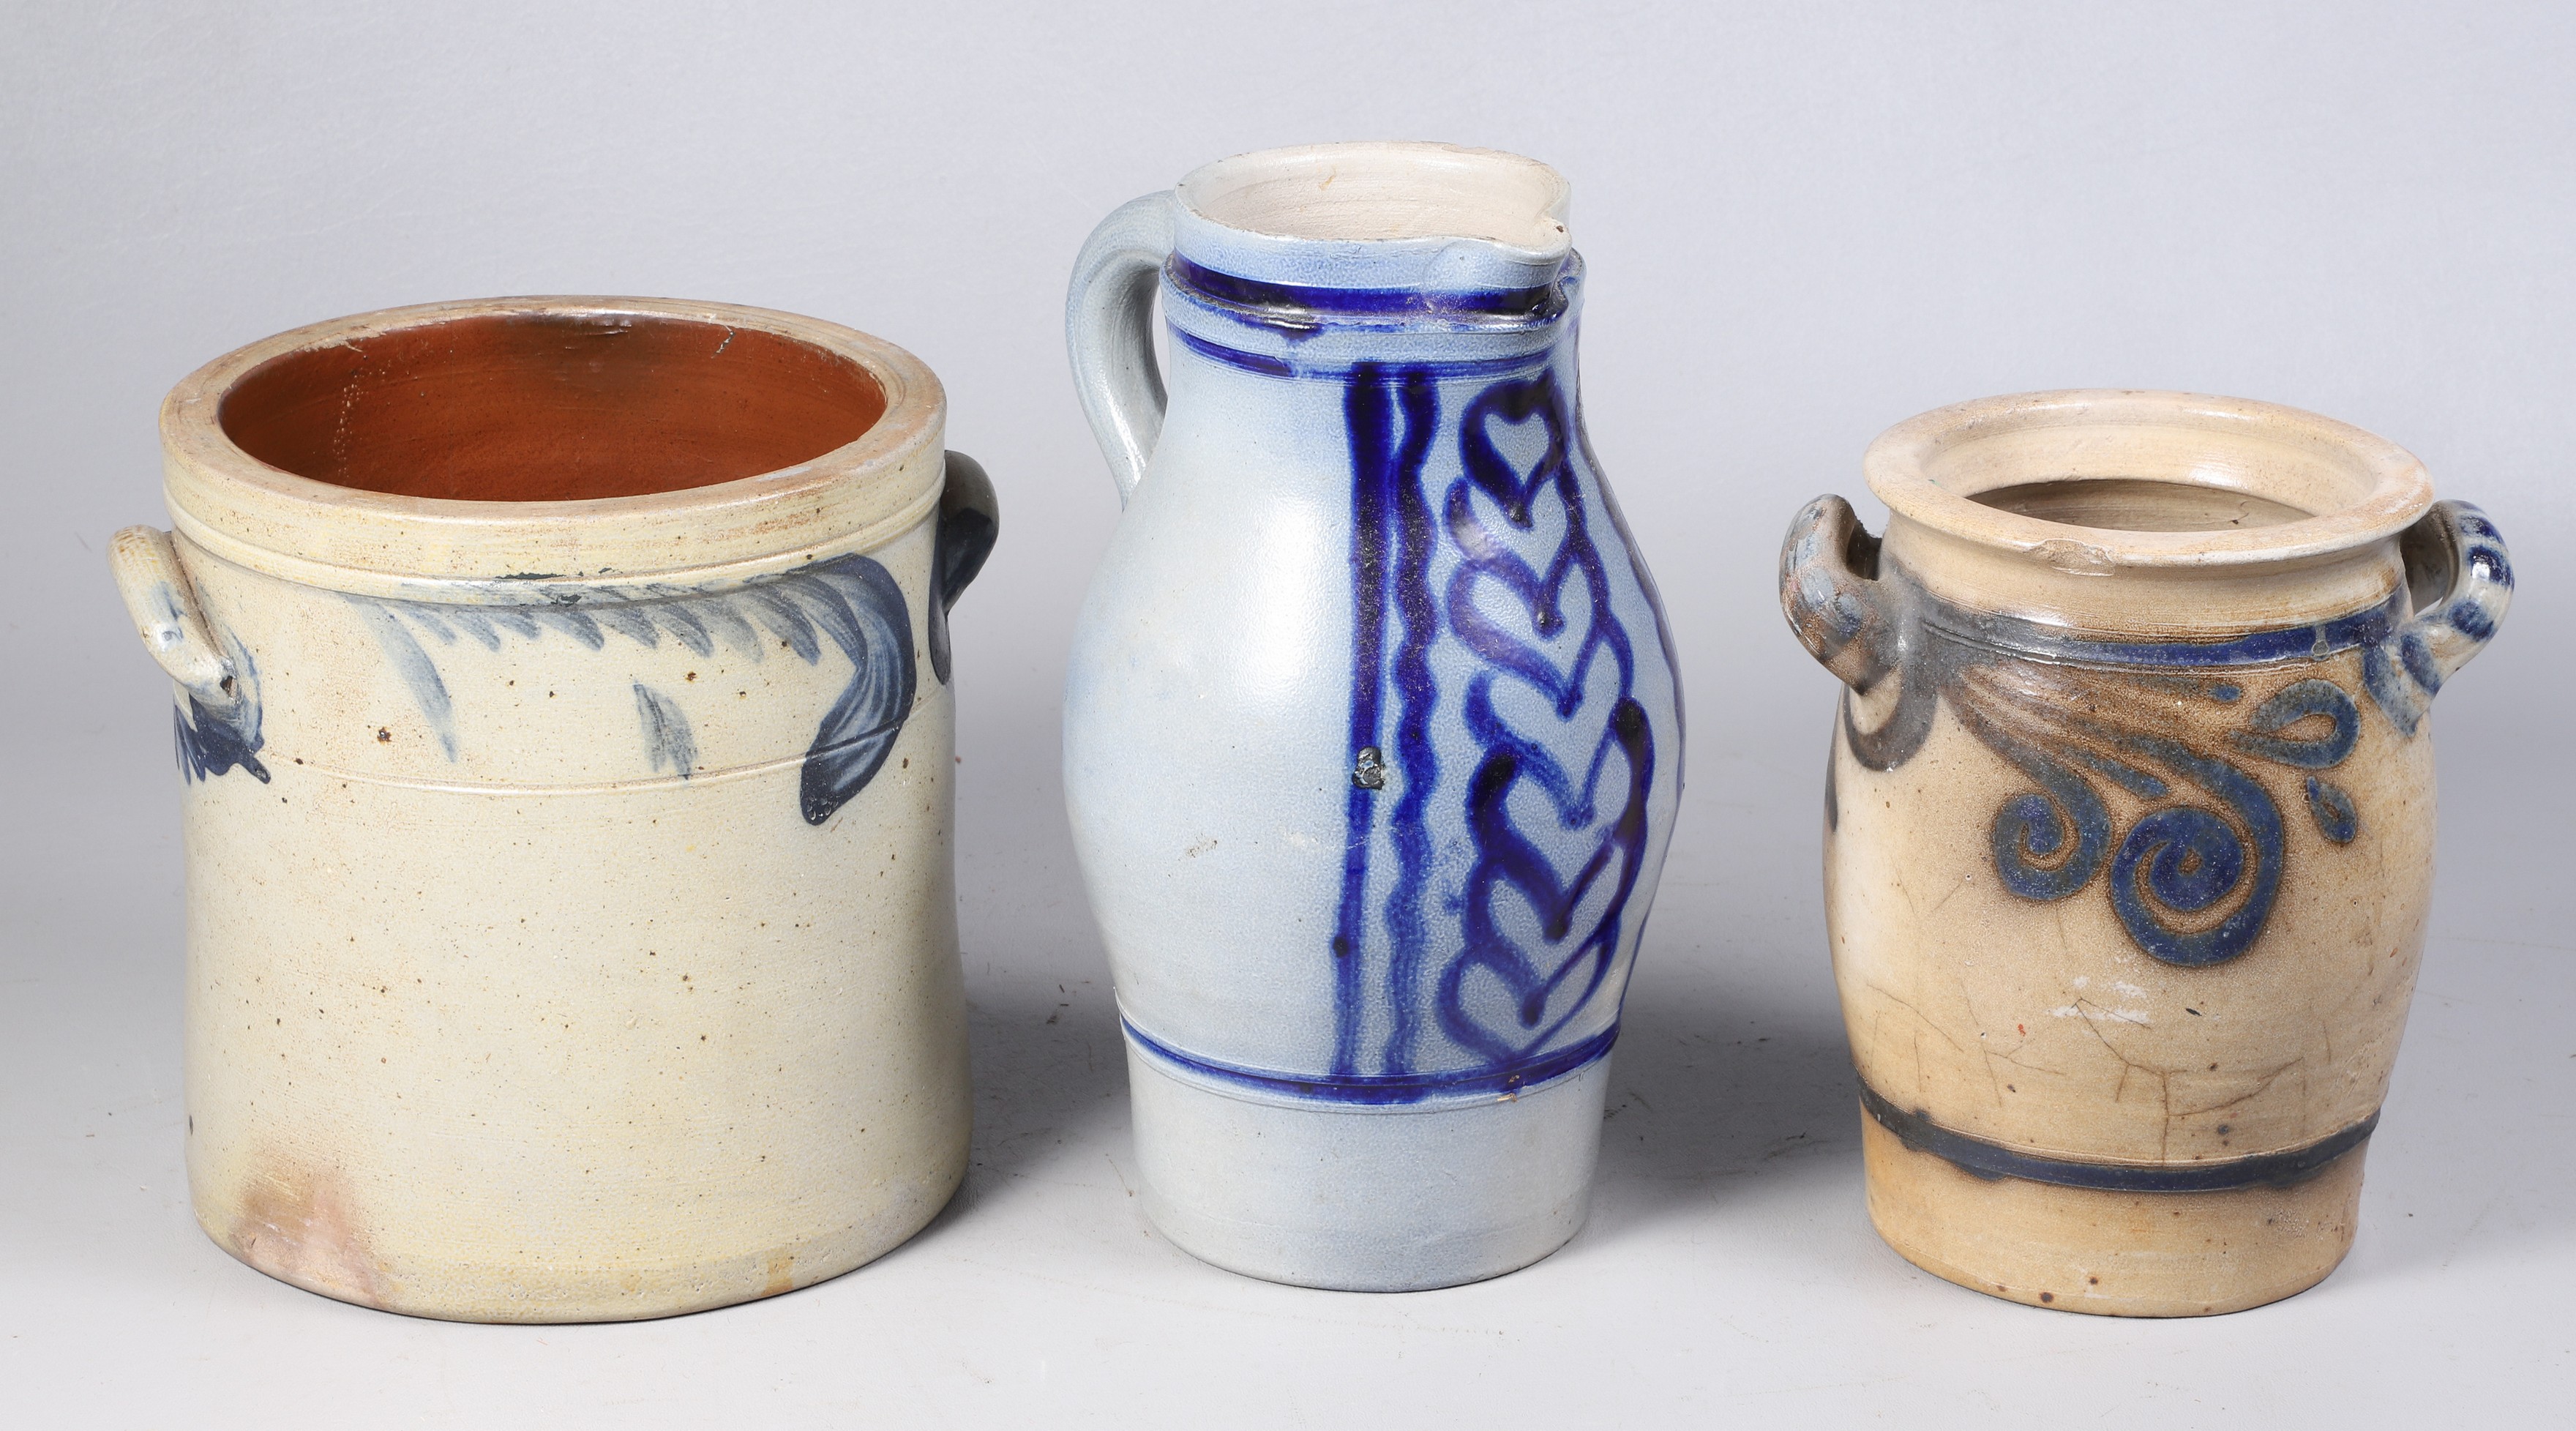  3 Blue decorated stoneware items  2e176c